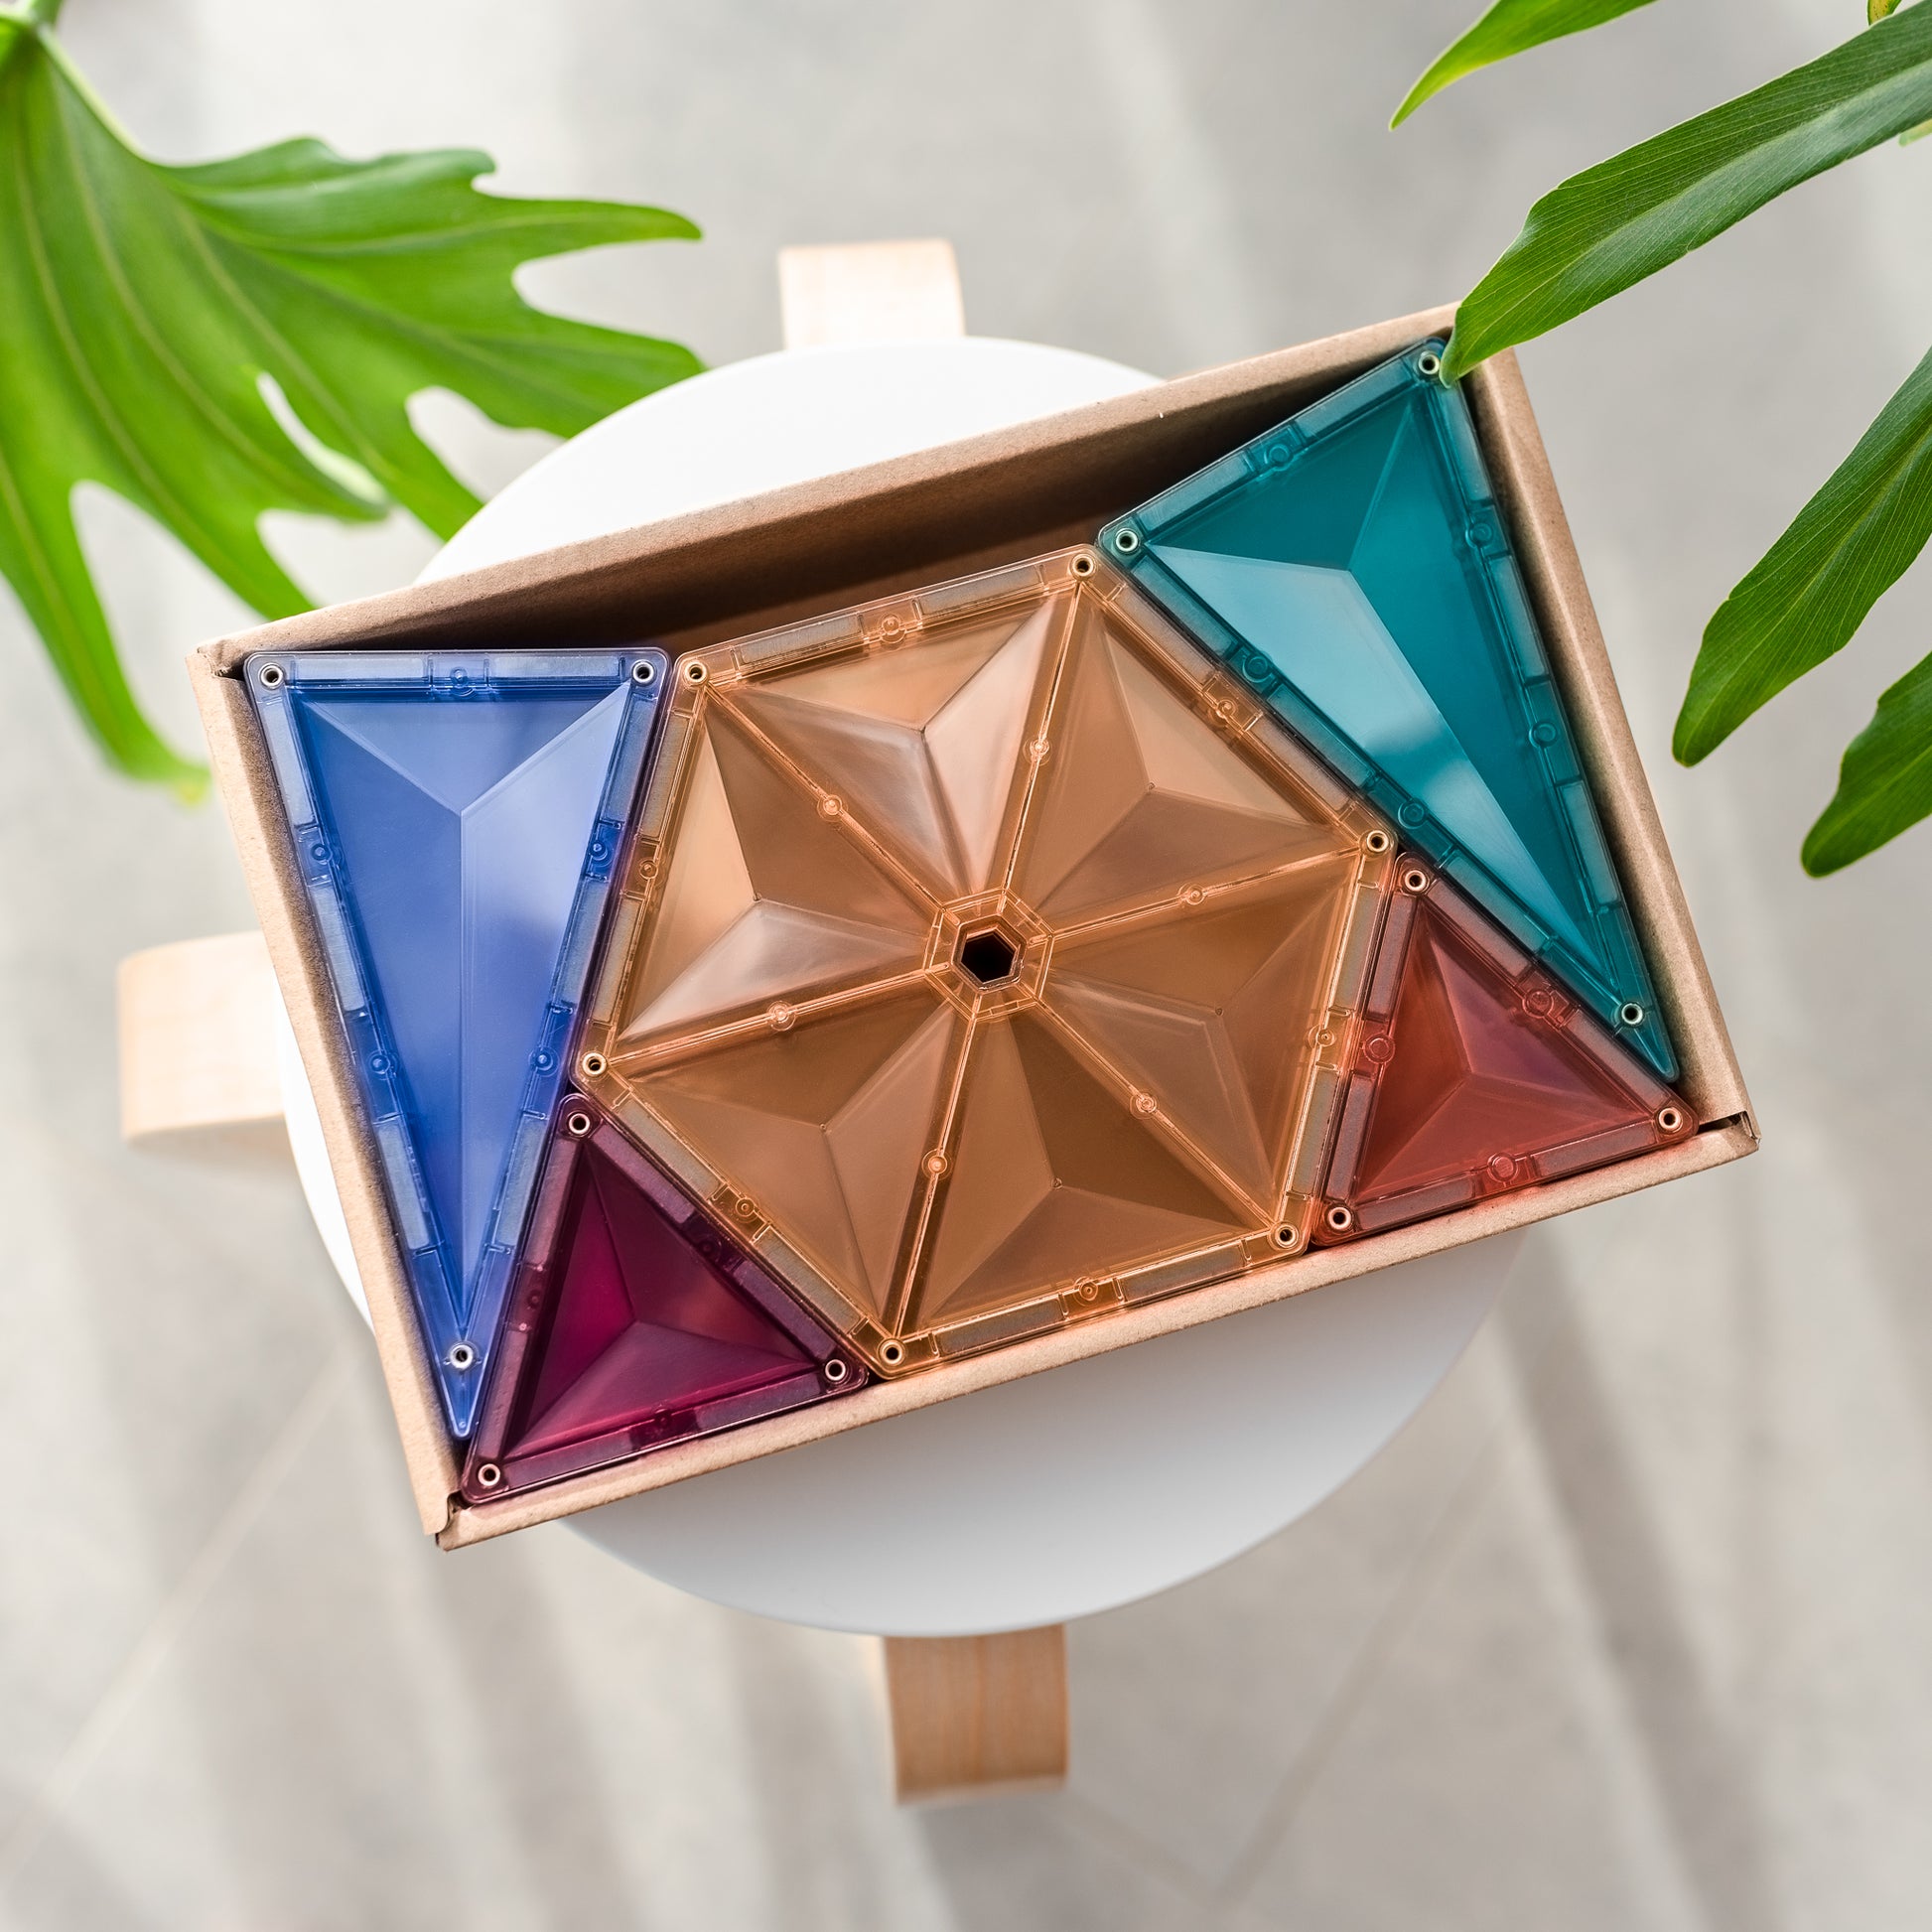 Connetix Magnetic Tiles - 40 Piece Pastel Geometry Set – Fox + Kit